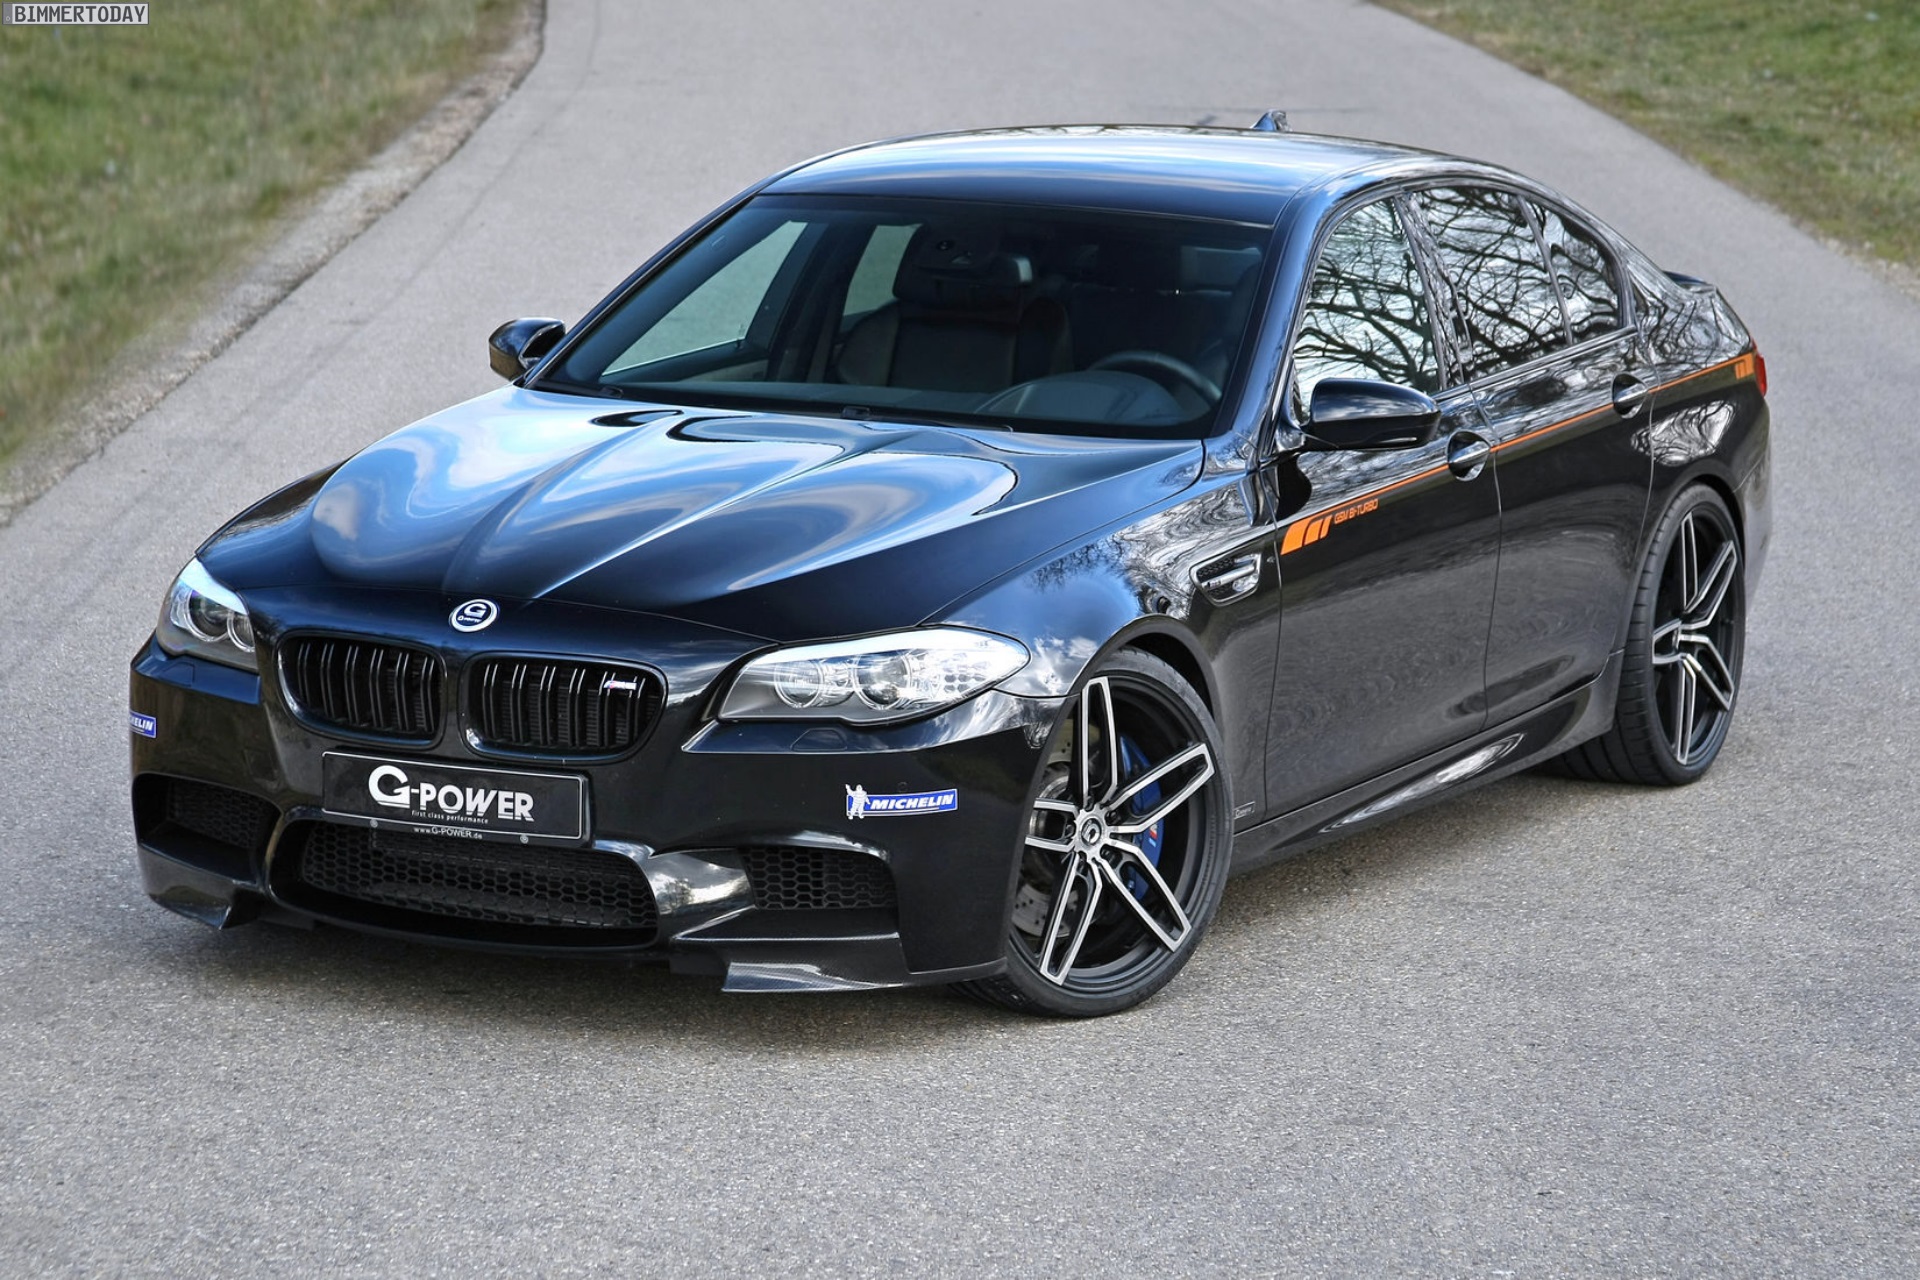 G-Power BMW M5 F10 LCI: Extrem-Tuning sorgt für 740 PS